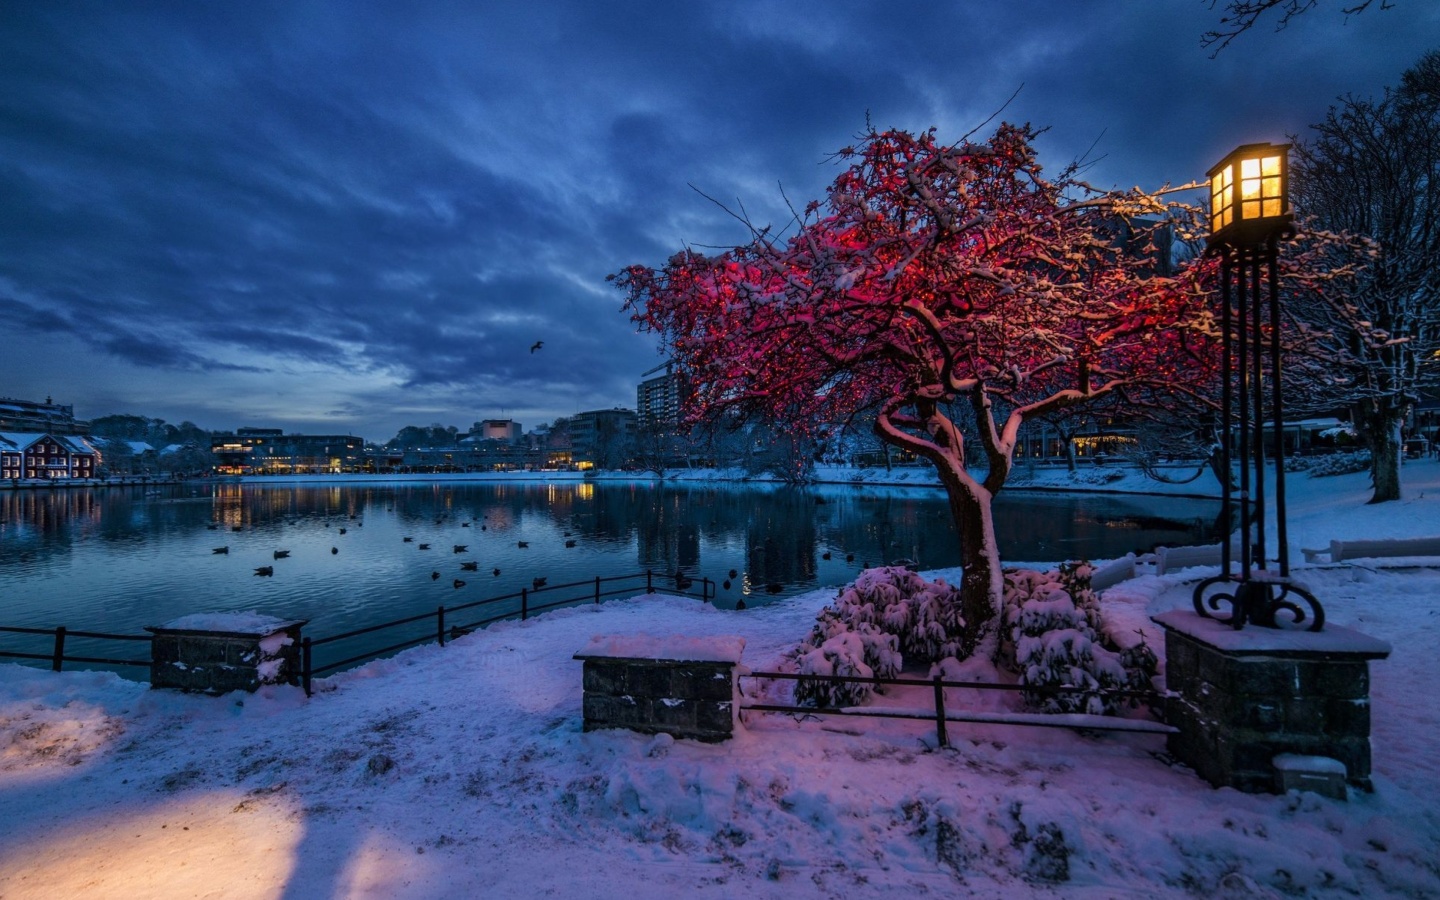 Norwegian city in January screenshot #1 1440x900